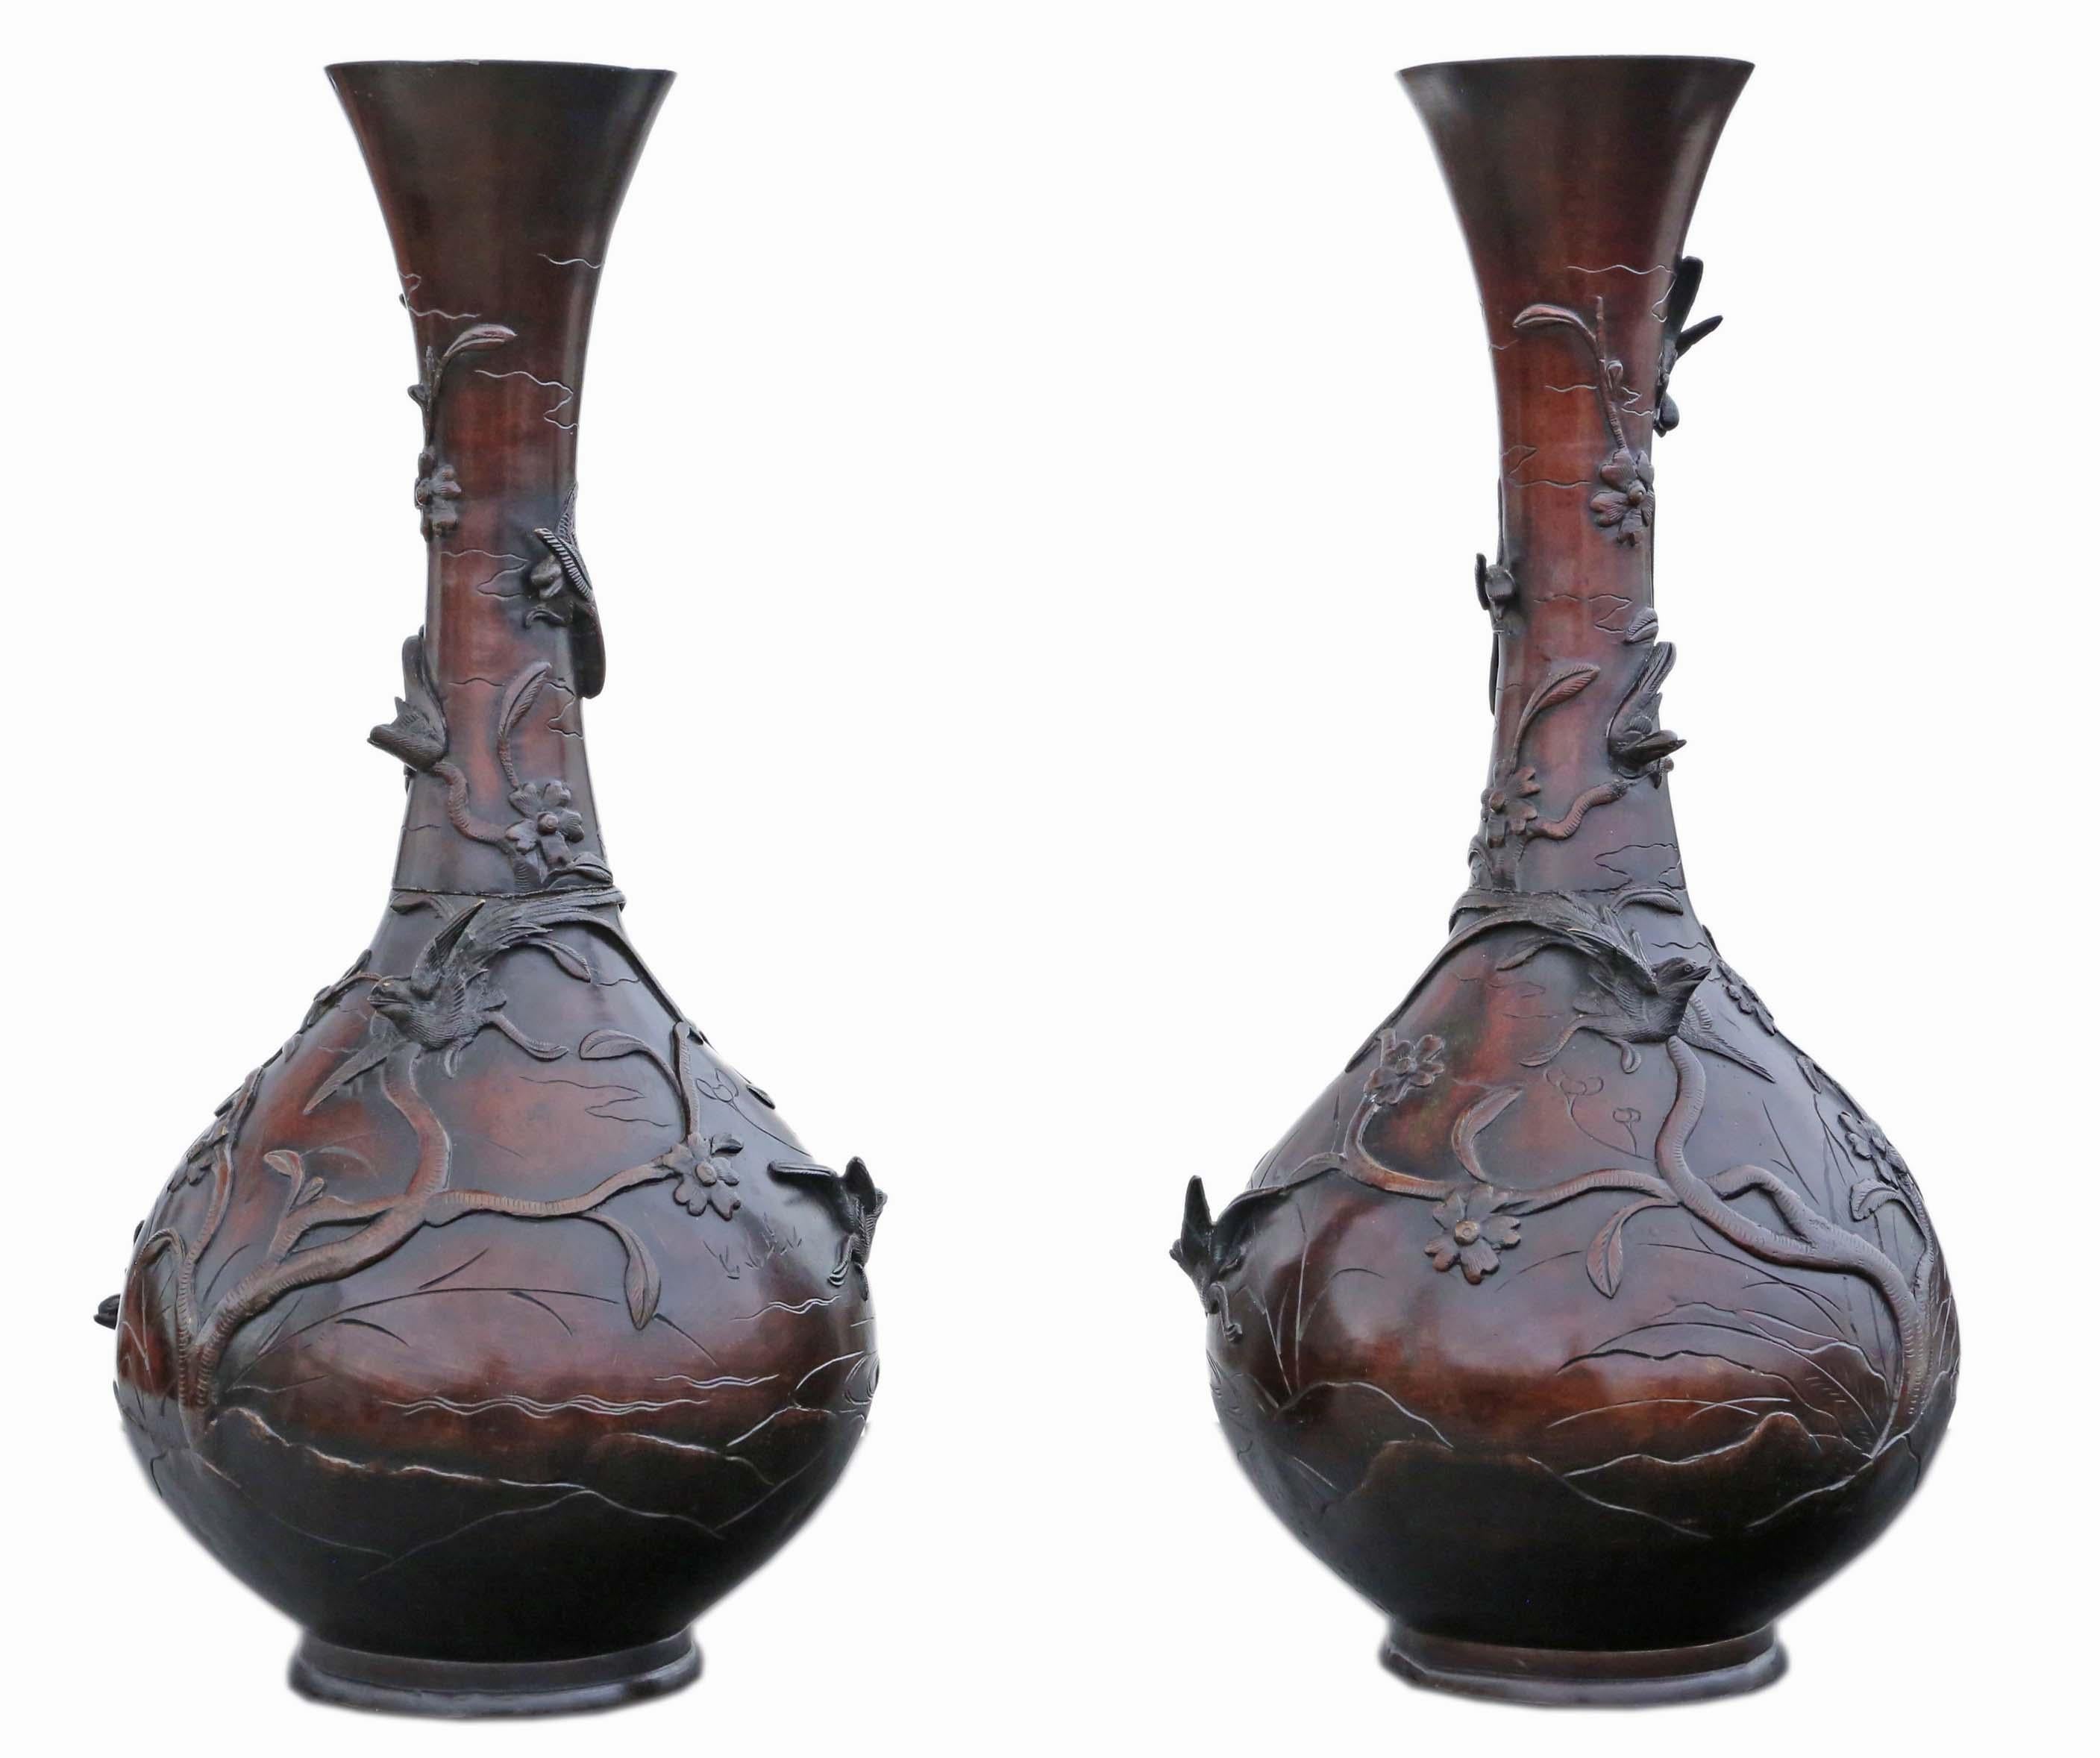 Ancienne très grande paire de vases japonais en bronze - Pièces d'artiste exquises de la période Meiji !

Ces magnifiques vases japonais en bronze, datant de la période Meiji du XIXe siècle, témoignent d'un savoir-faire et d'un art exceptionnels.